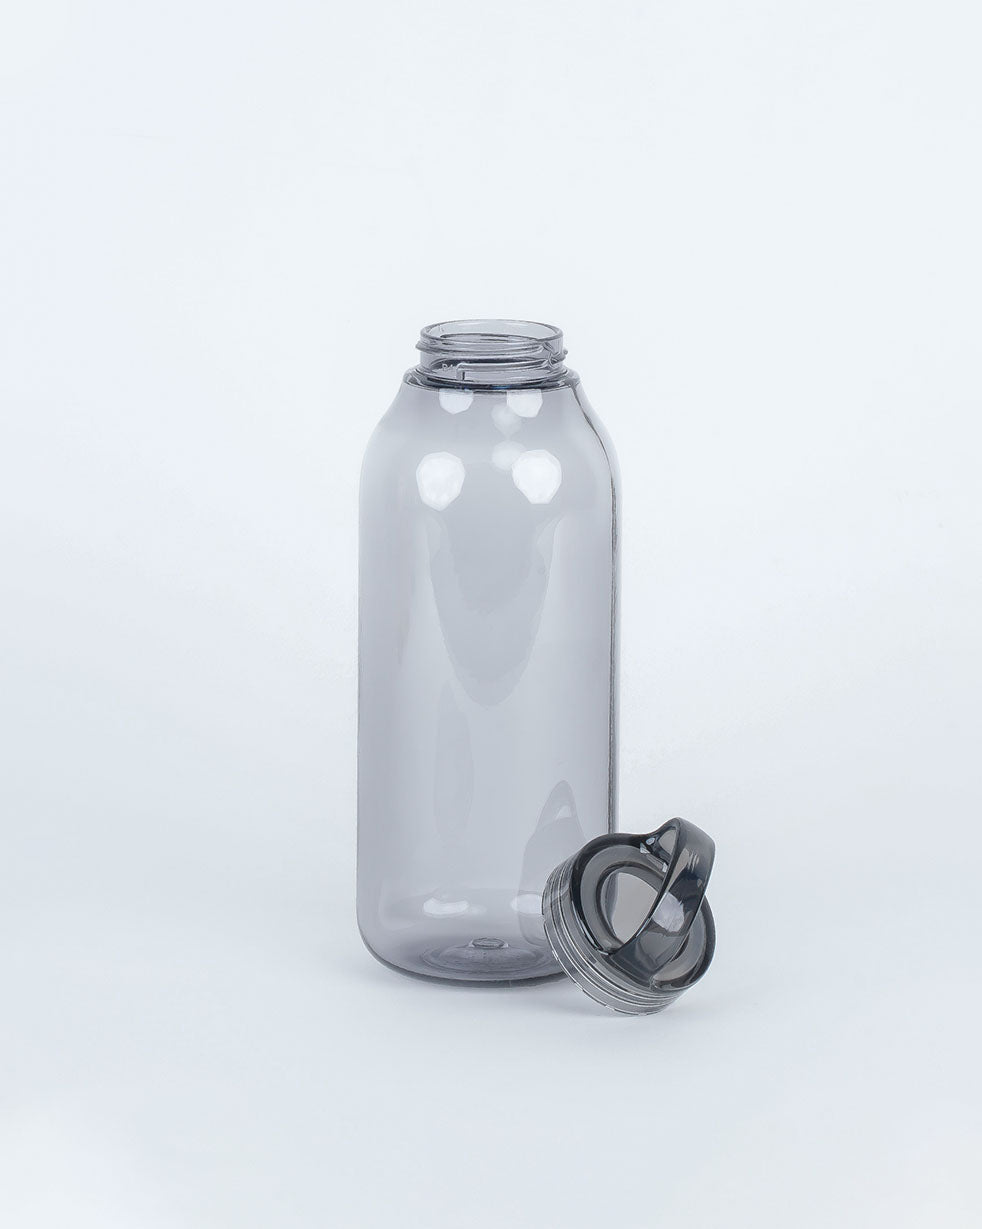 Kinto 500ml Water Bottle - Smoke